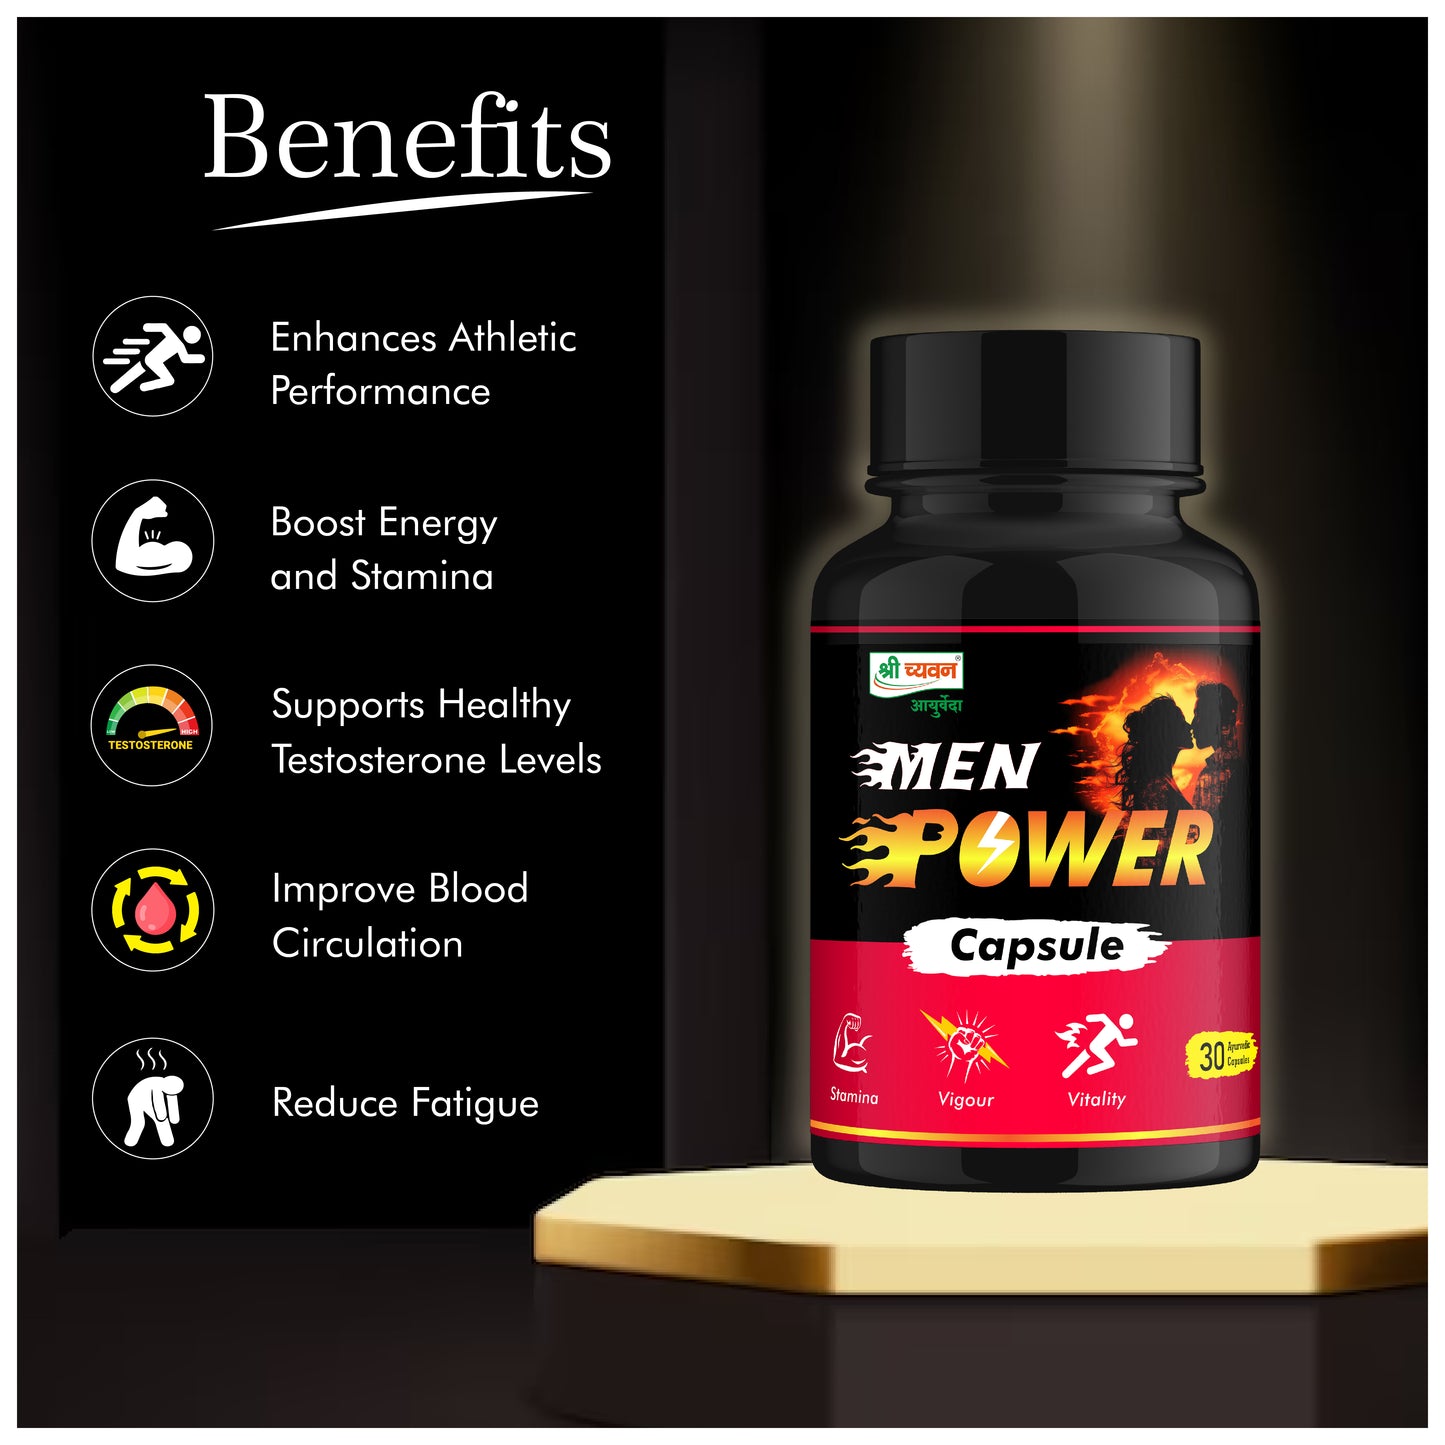 menpower capsule for mens energy